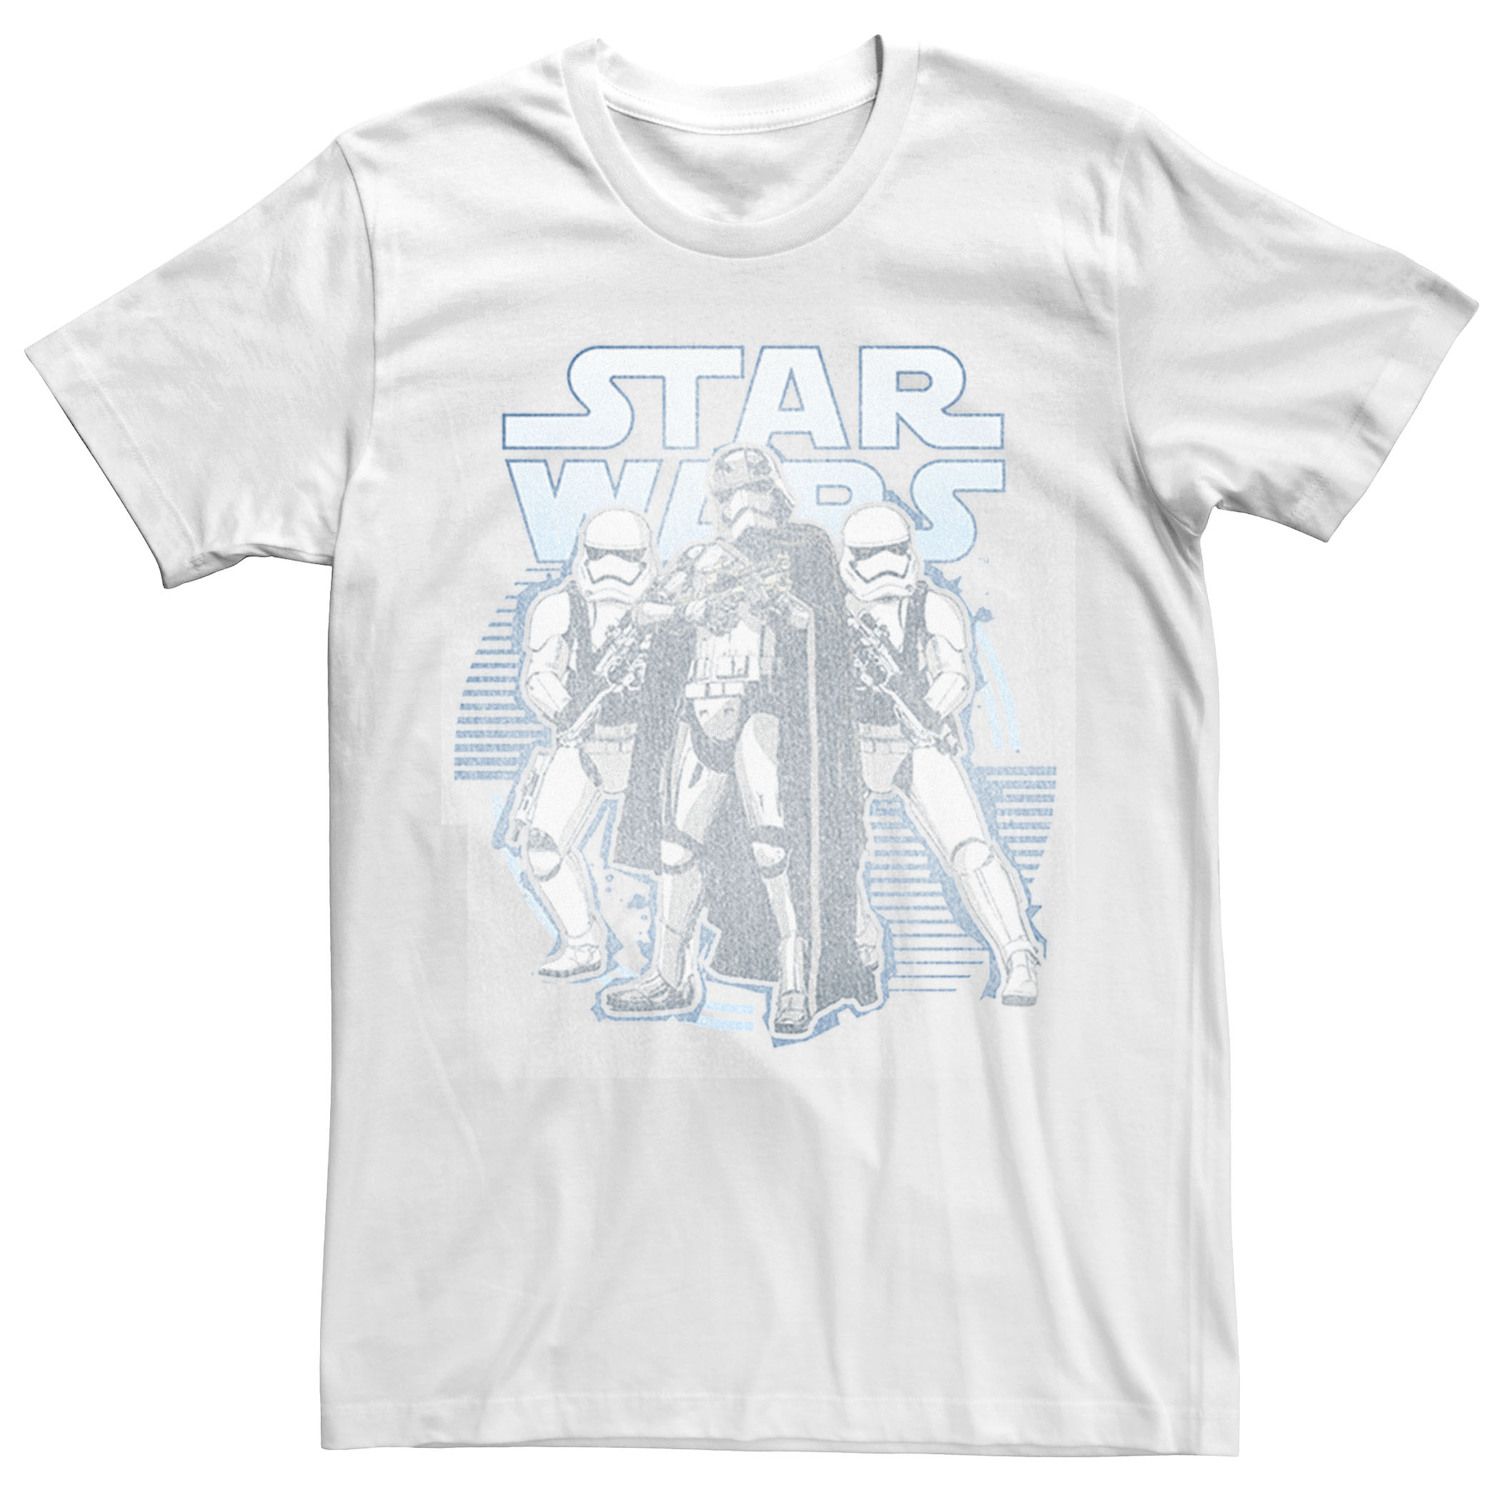 Мужская футболка в стиле ретро Captain Phasma Star Wars star wars фигурка captain phasma